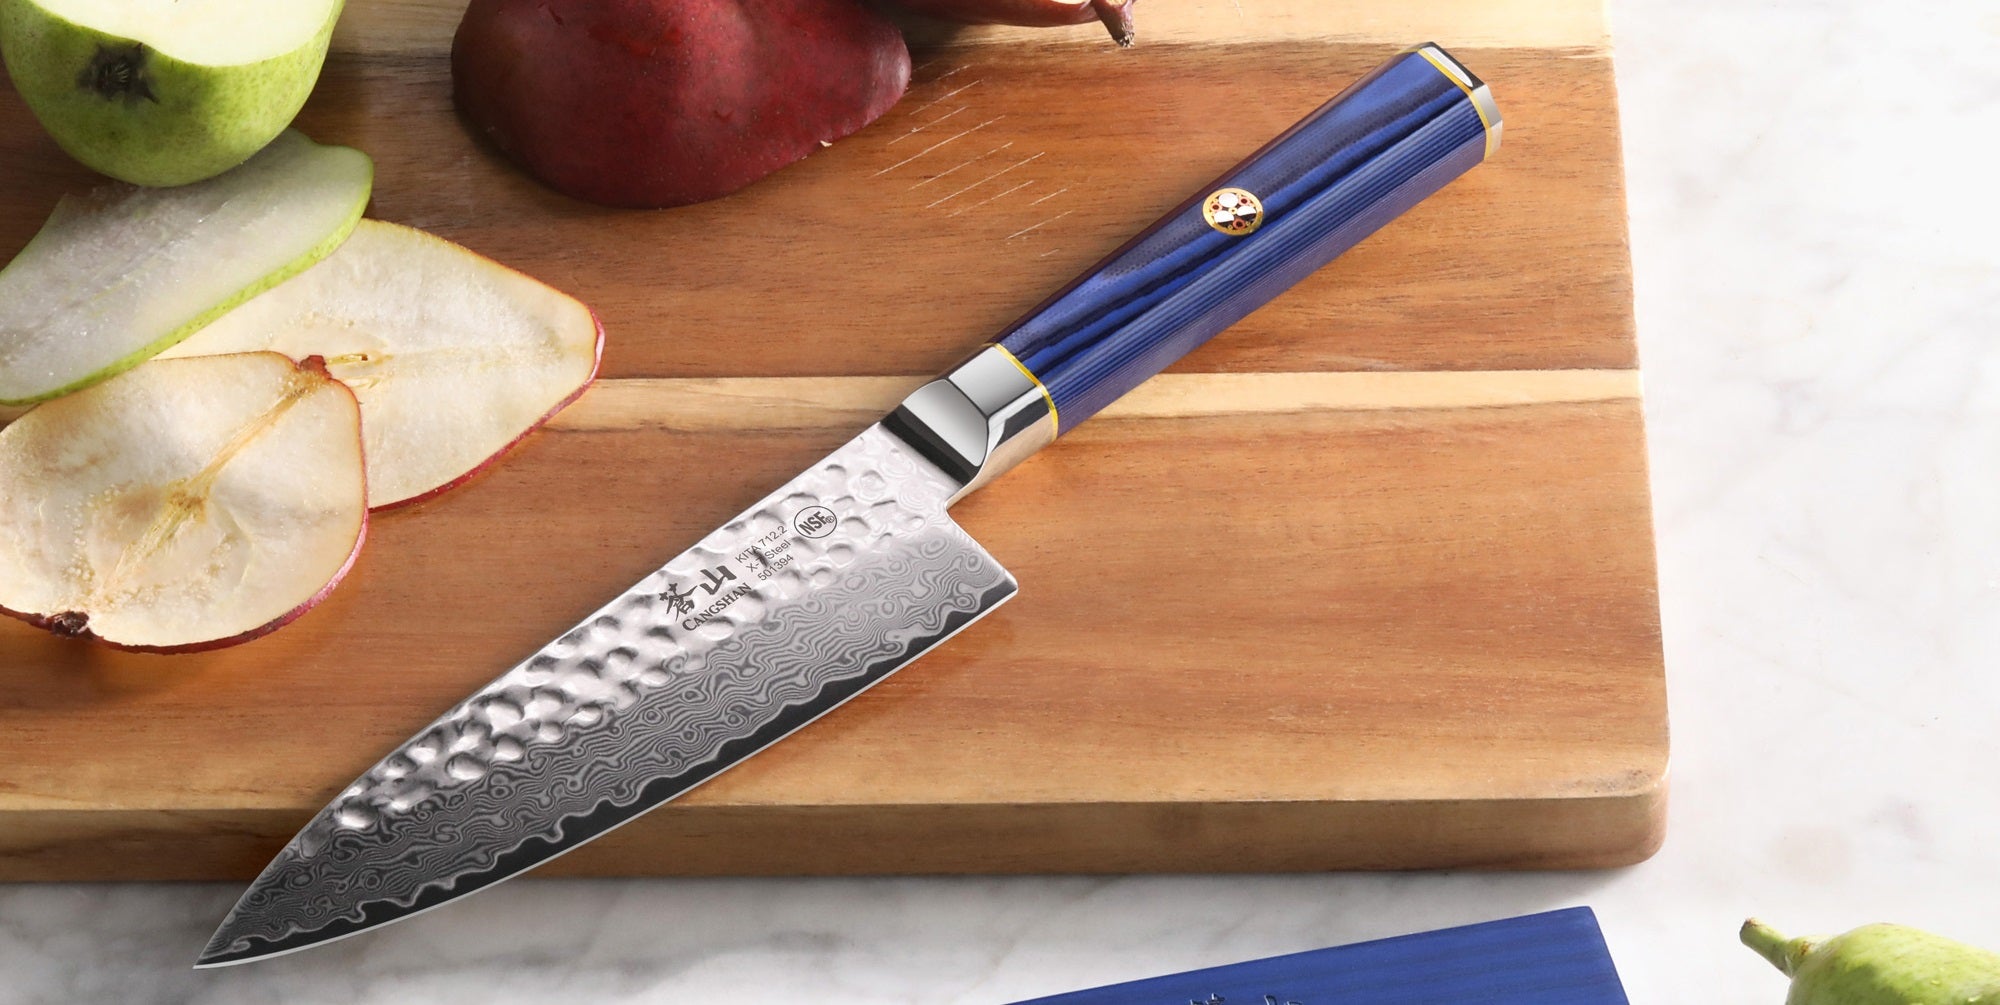 Cangshan TS Series Steak Knife Block Set